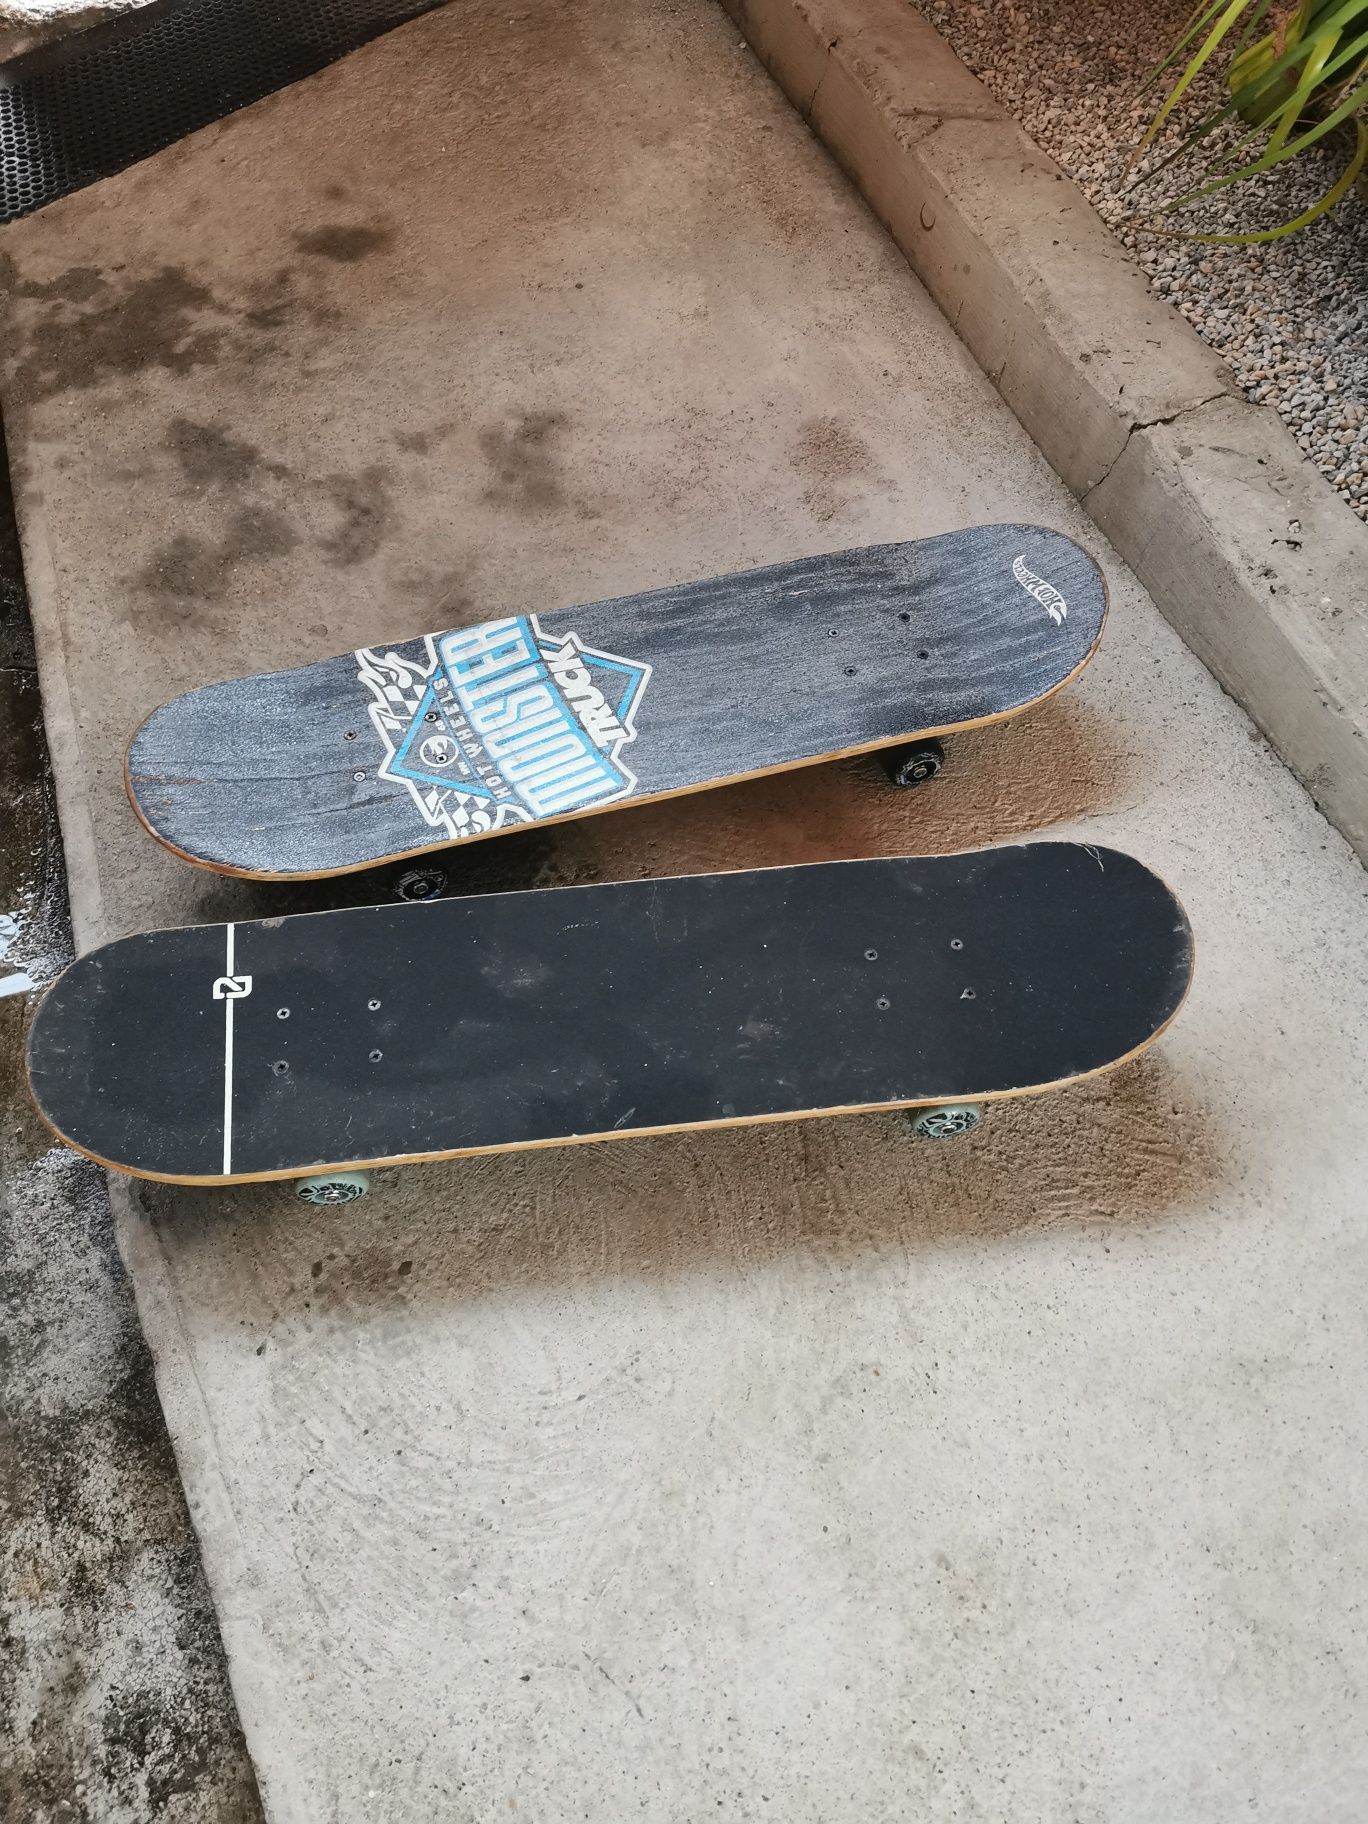 De vanzare Skateboard